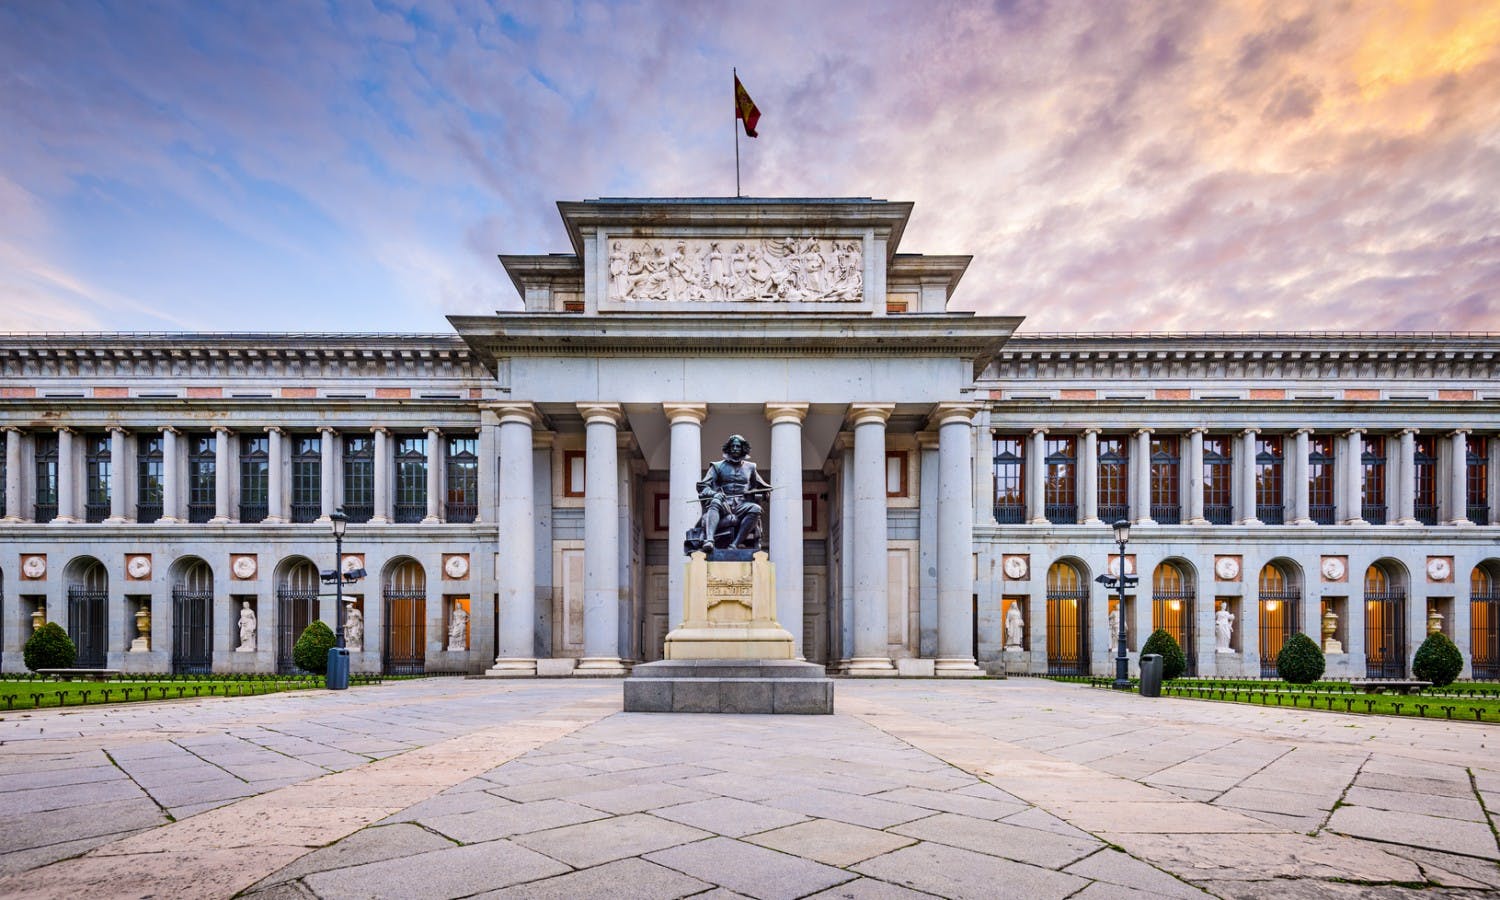 The Prado Museum of Madrid